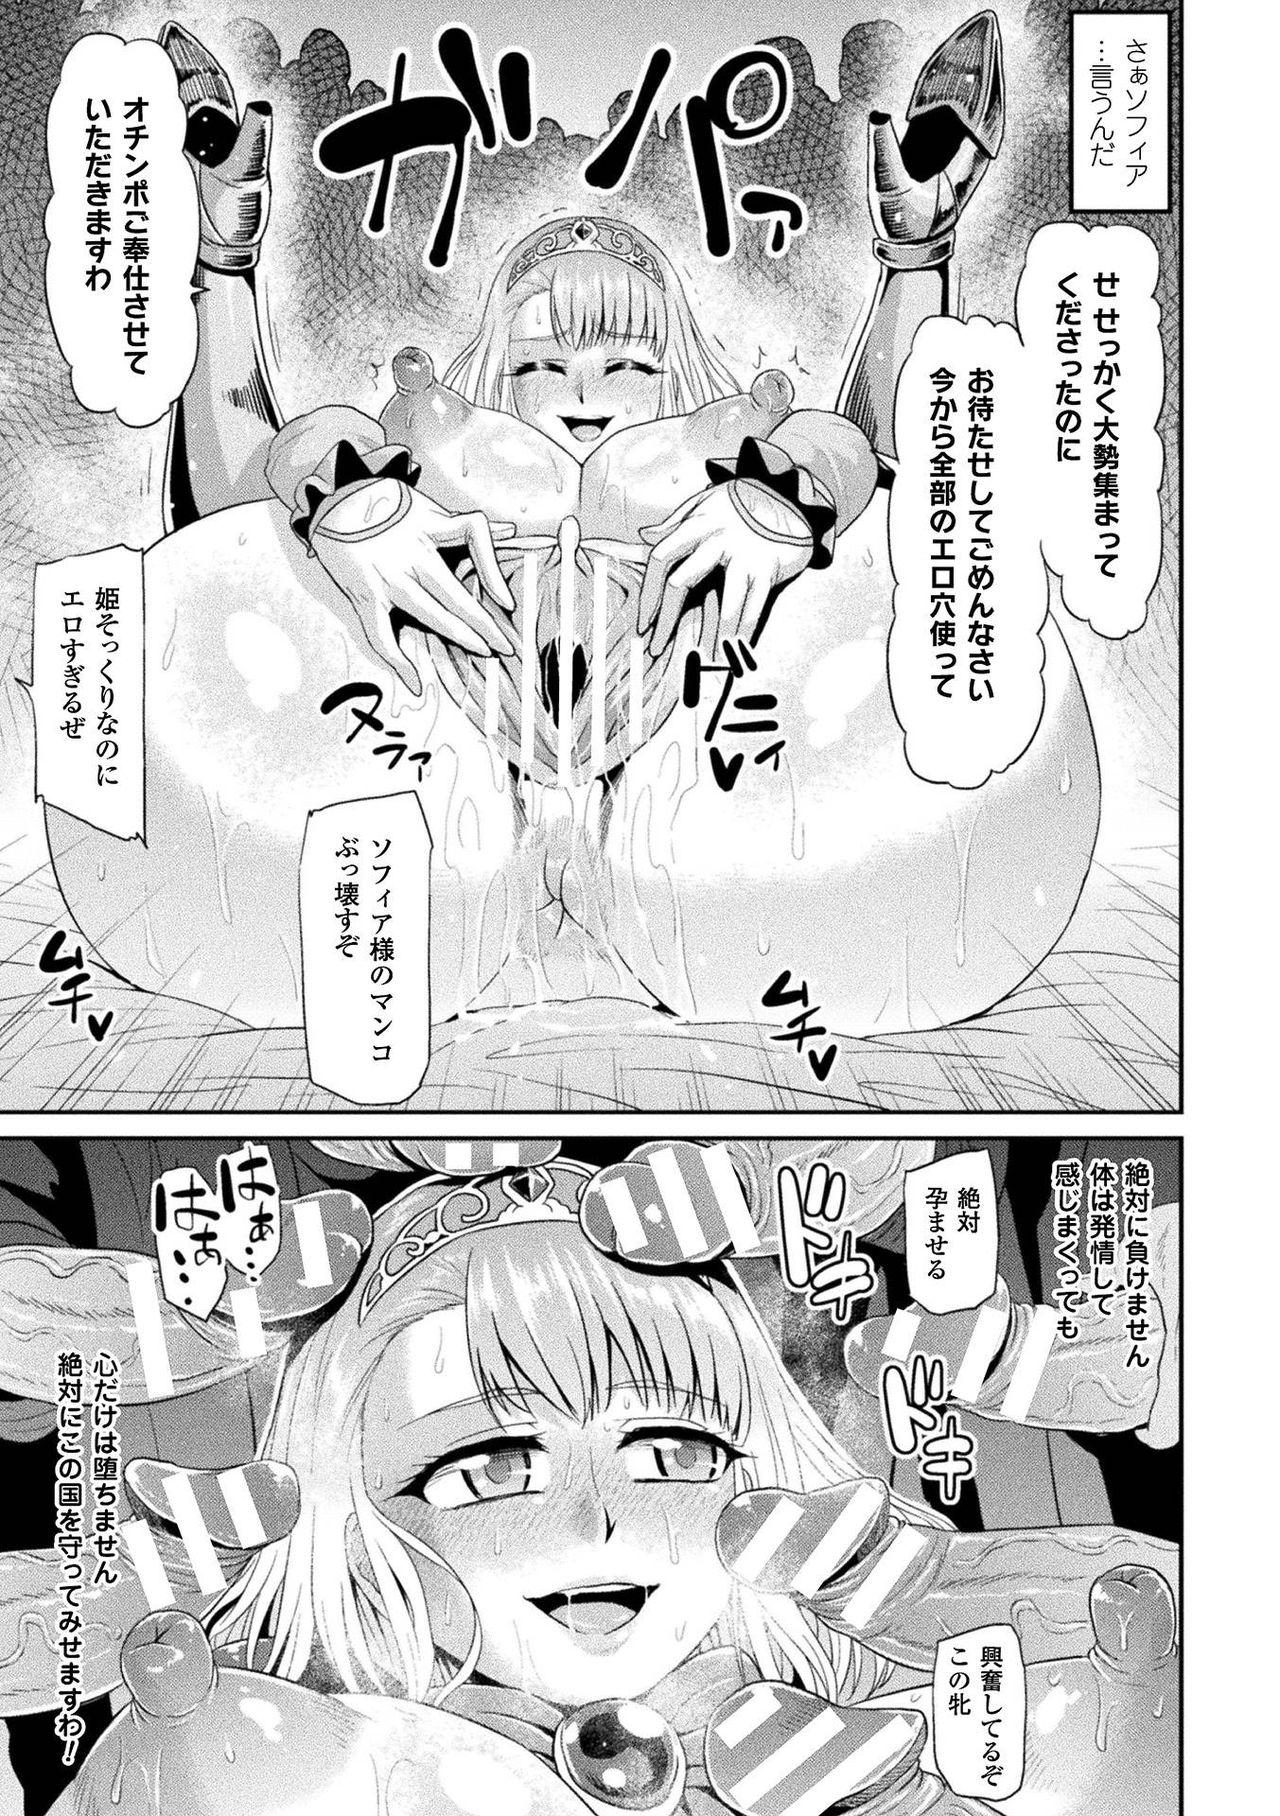 Haiboku Otome Ecstasy Vol. 2 42